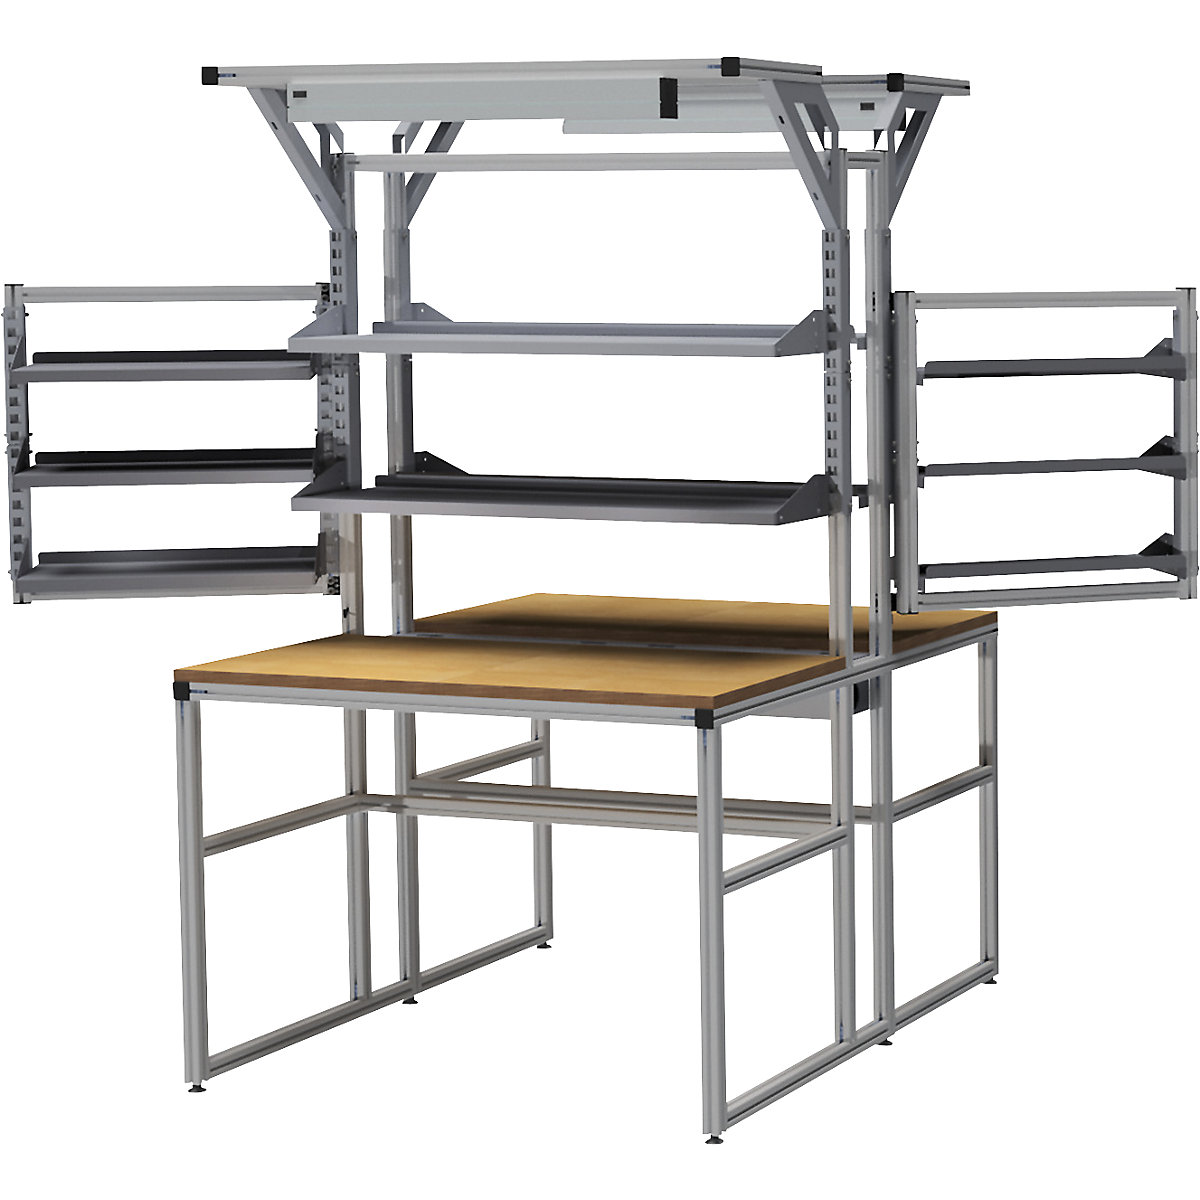 Stół warsztatowy aluminiowy workalu® z modułem systemowym, dwustronny – bedrunka hirth